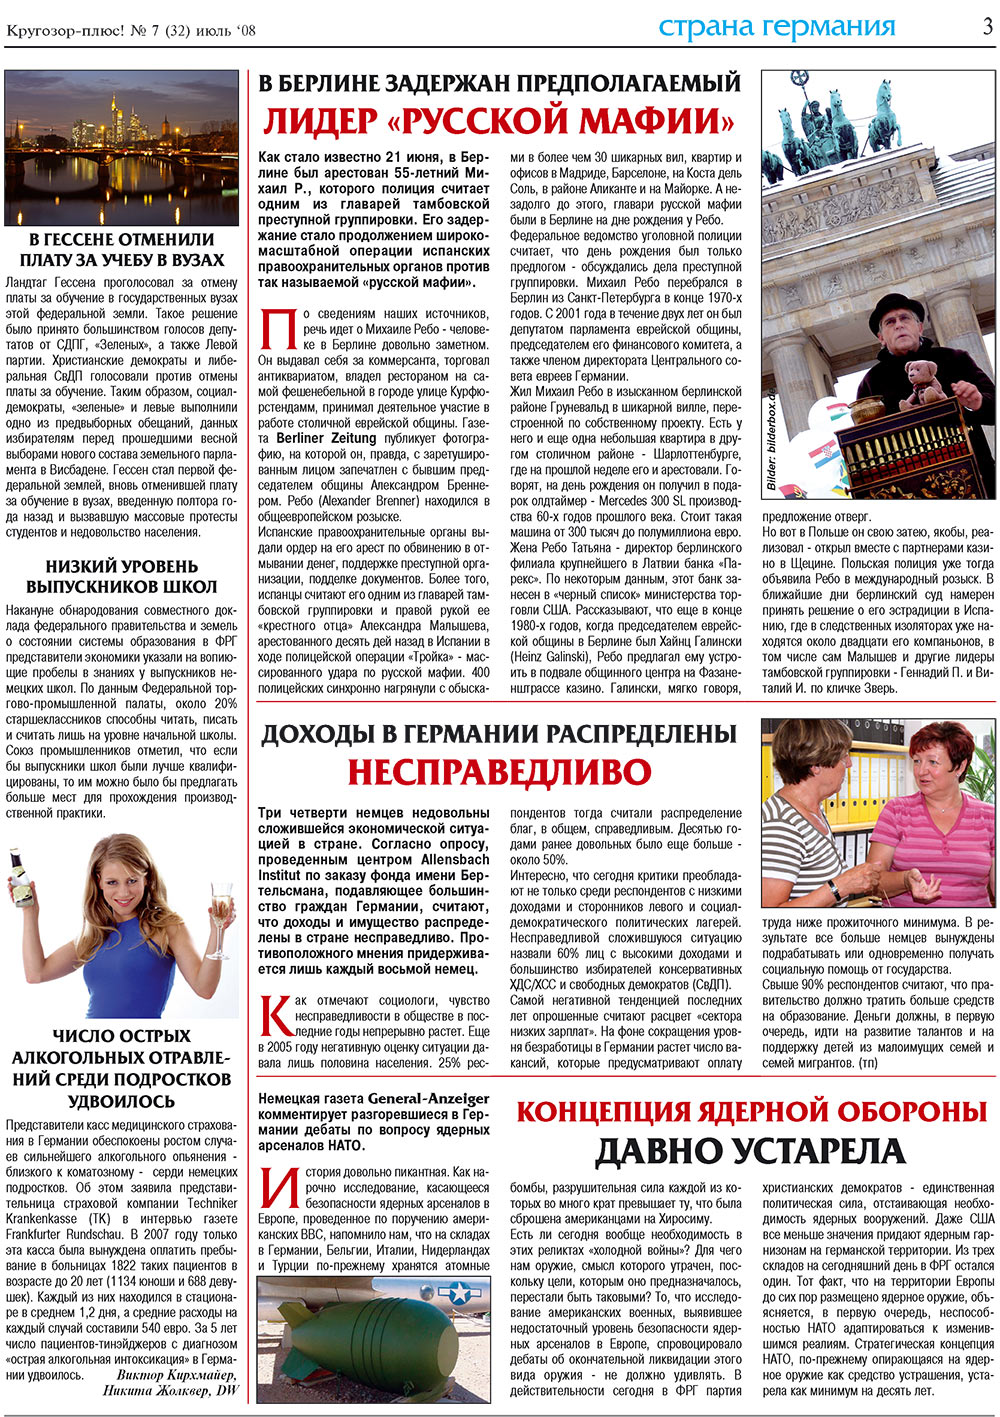 Кругозор плюс!, газета. 2008 №7 стр.3